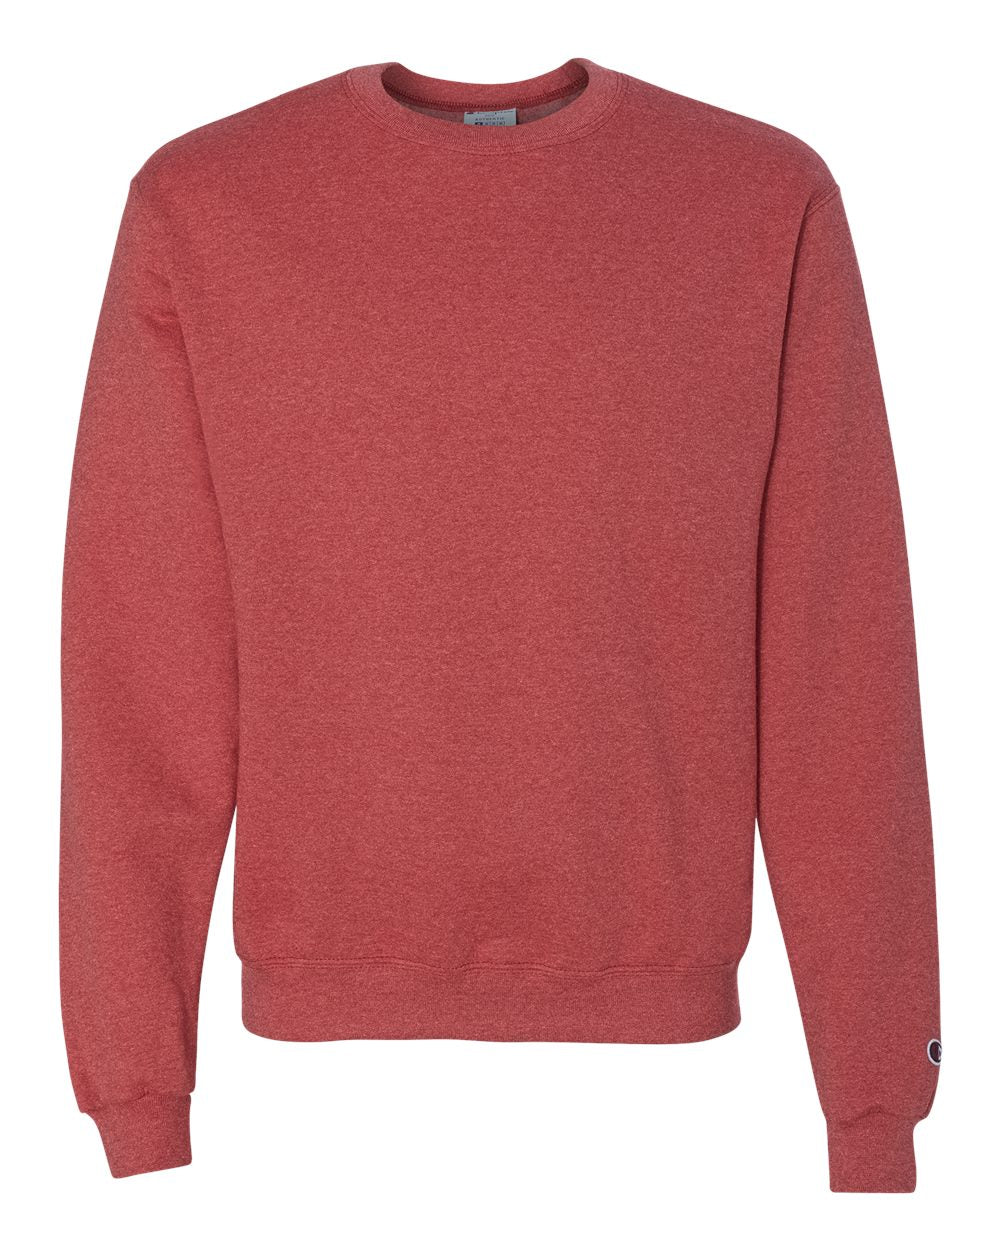 champion powerblend crewneck sweatshirt scarlet heather red